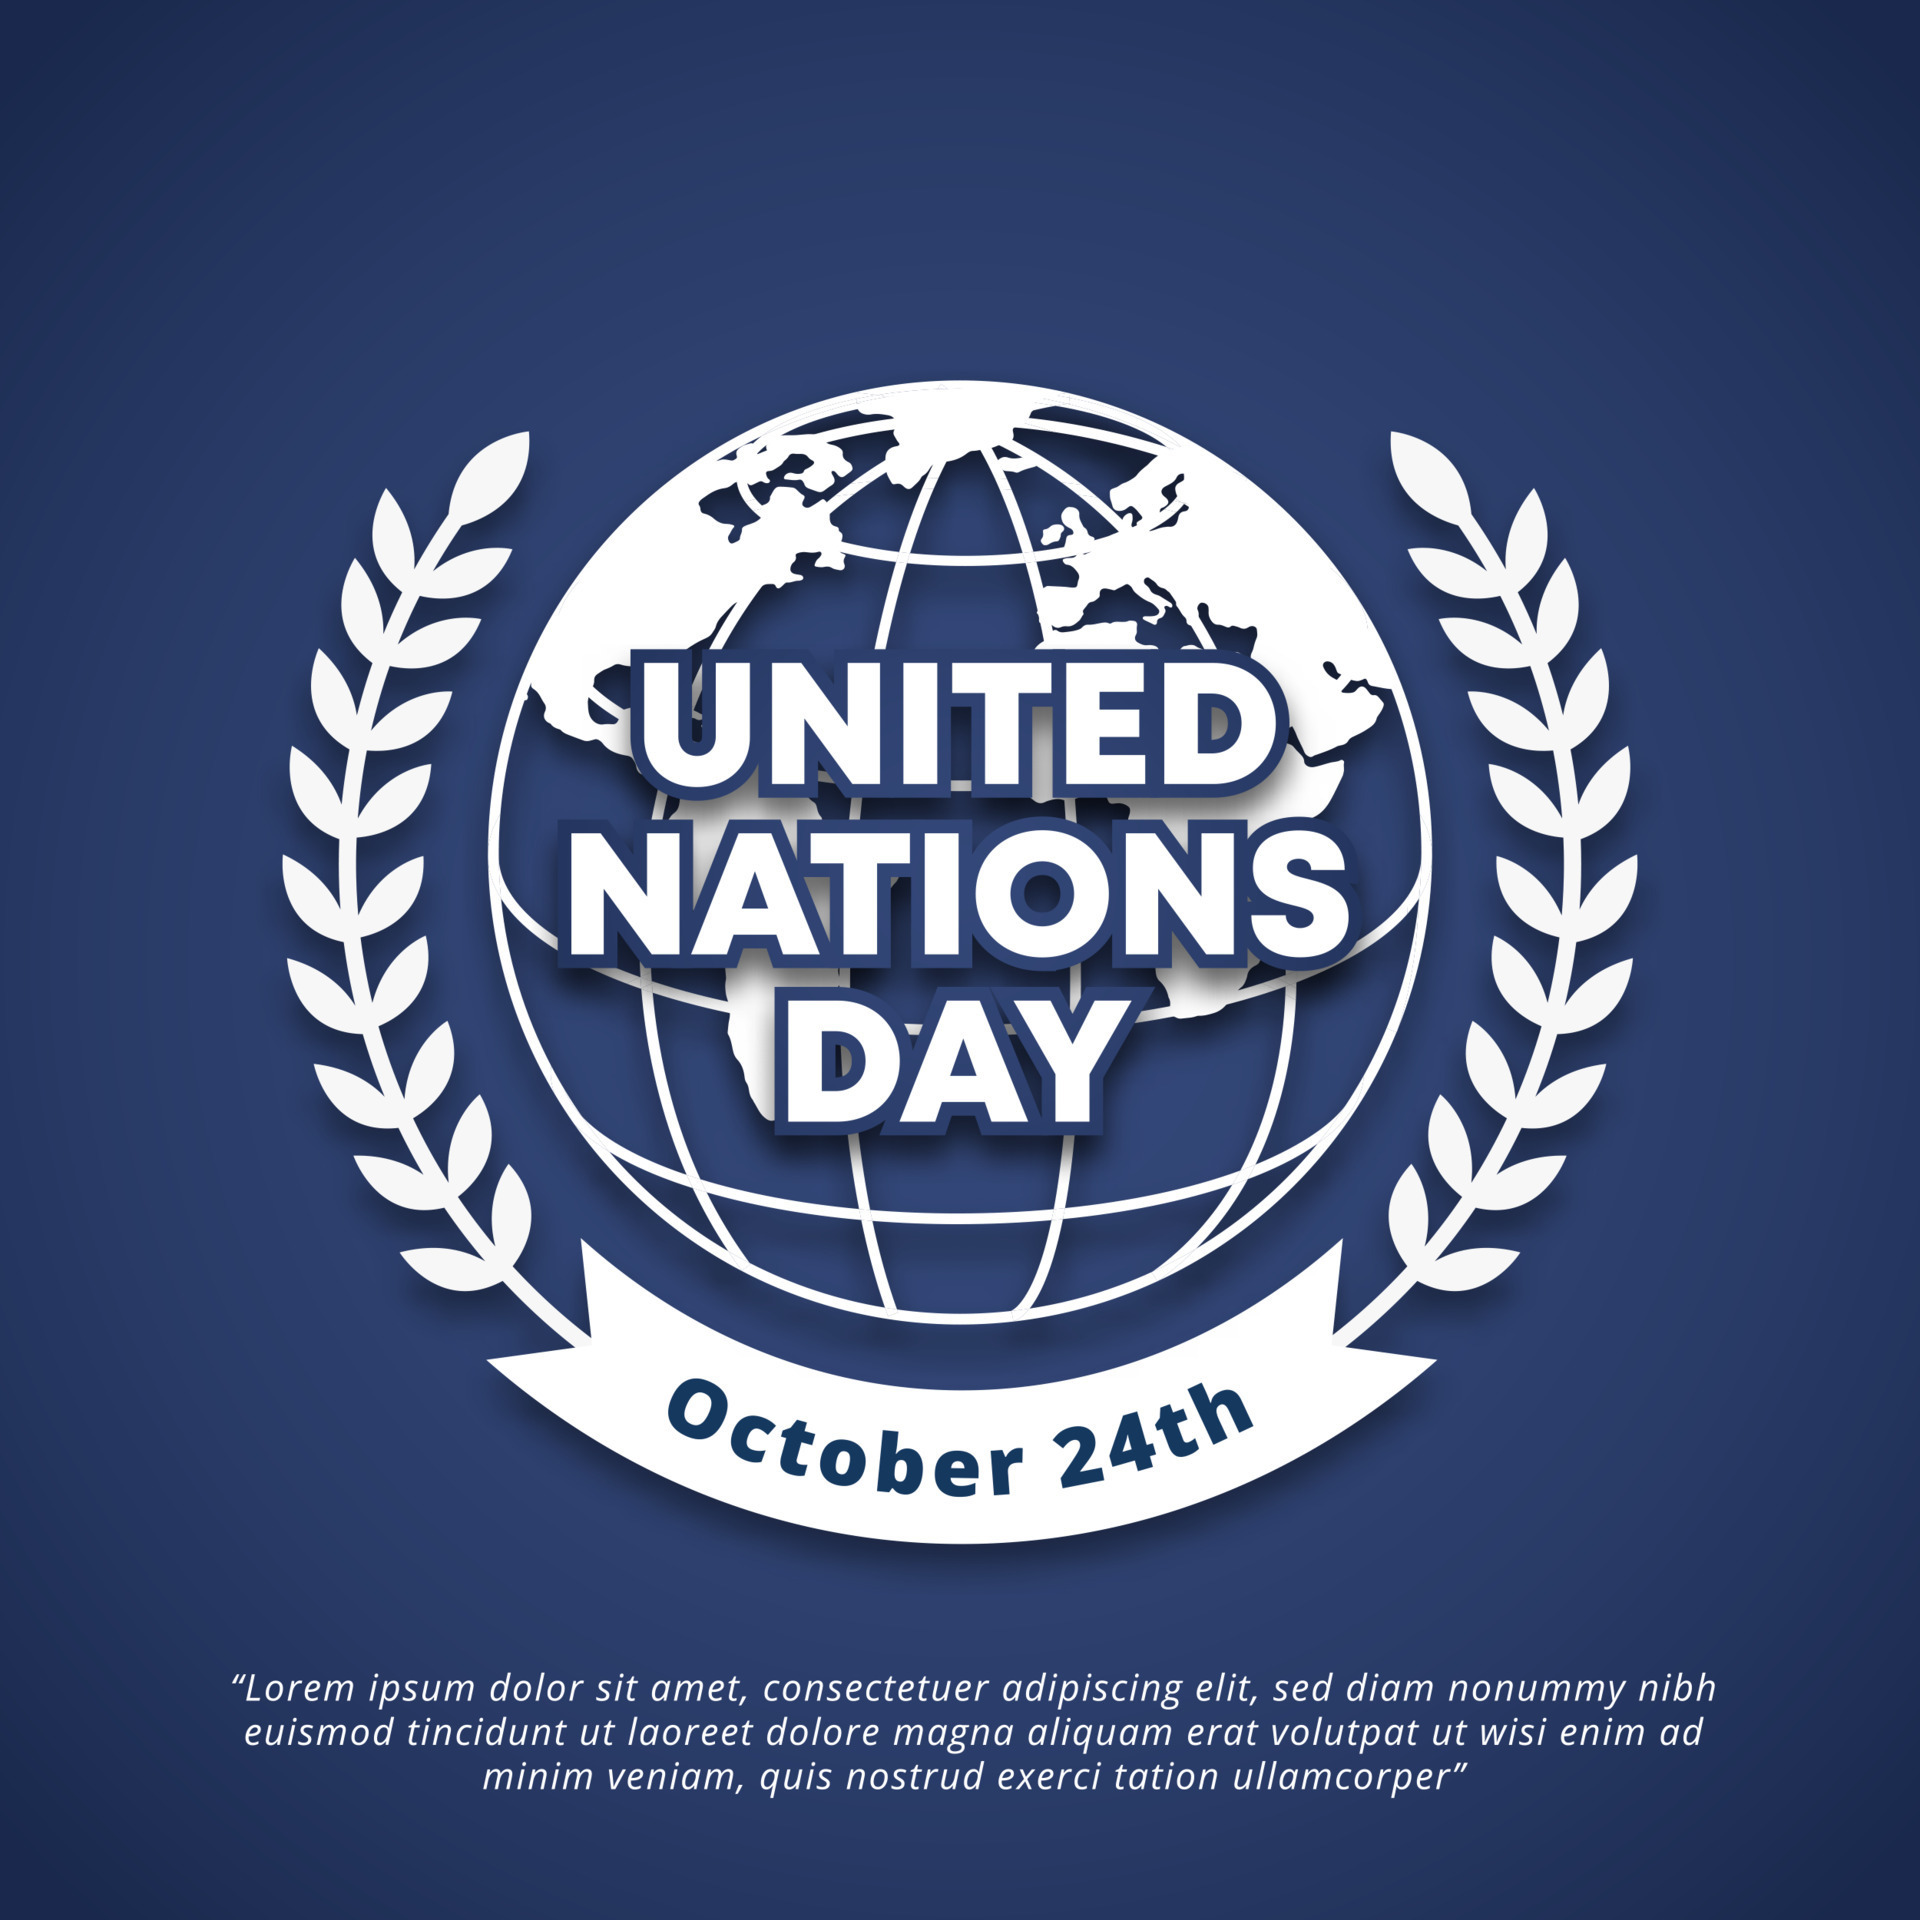 Ngày Liên Hiệp Quốc là một dịp để cùng nhau tôn vinh những thành tựu và ý nghĩa của tổ chức quan trọng này. Bạn có muốn biết thêm về các người đại diện cho đất nước Việt Nam khi tham gia các hoạt động của Liên Hiệp Quốc hay không? Hãy xem hình ảnh liên quan để khám phá thêm nhé!